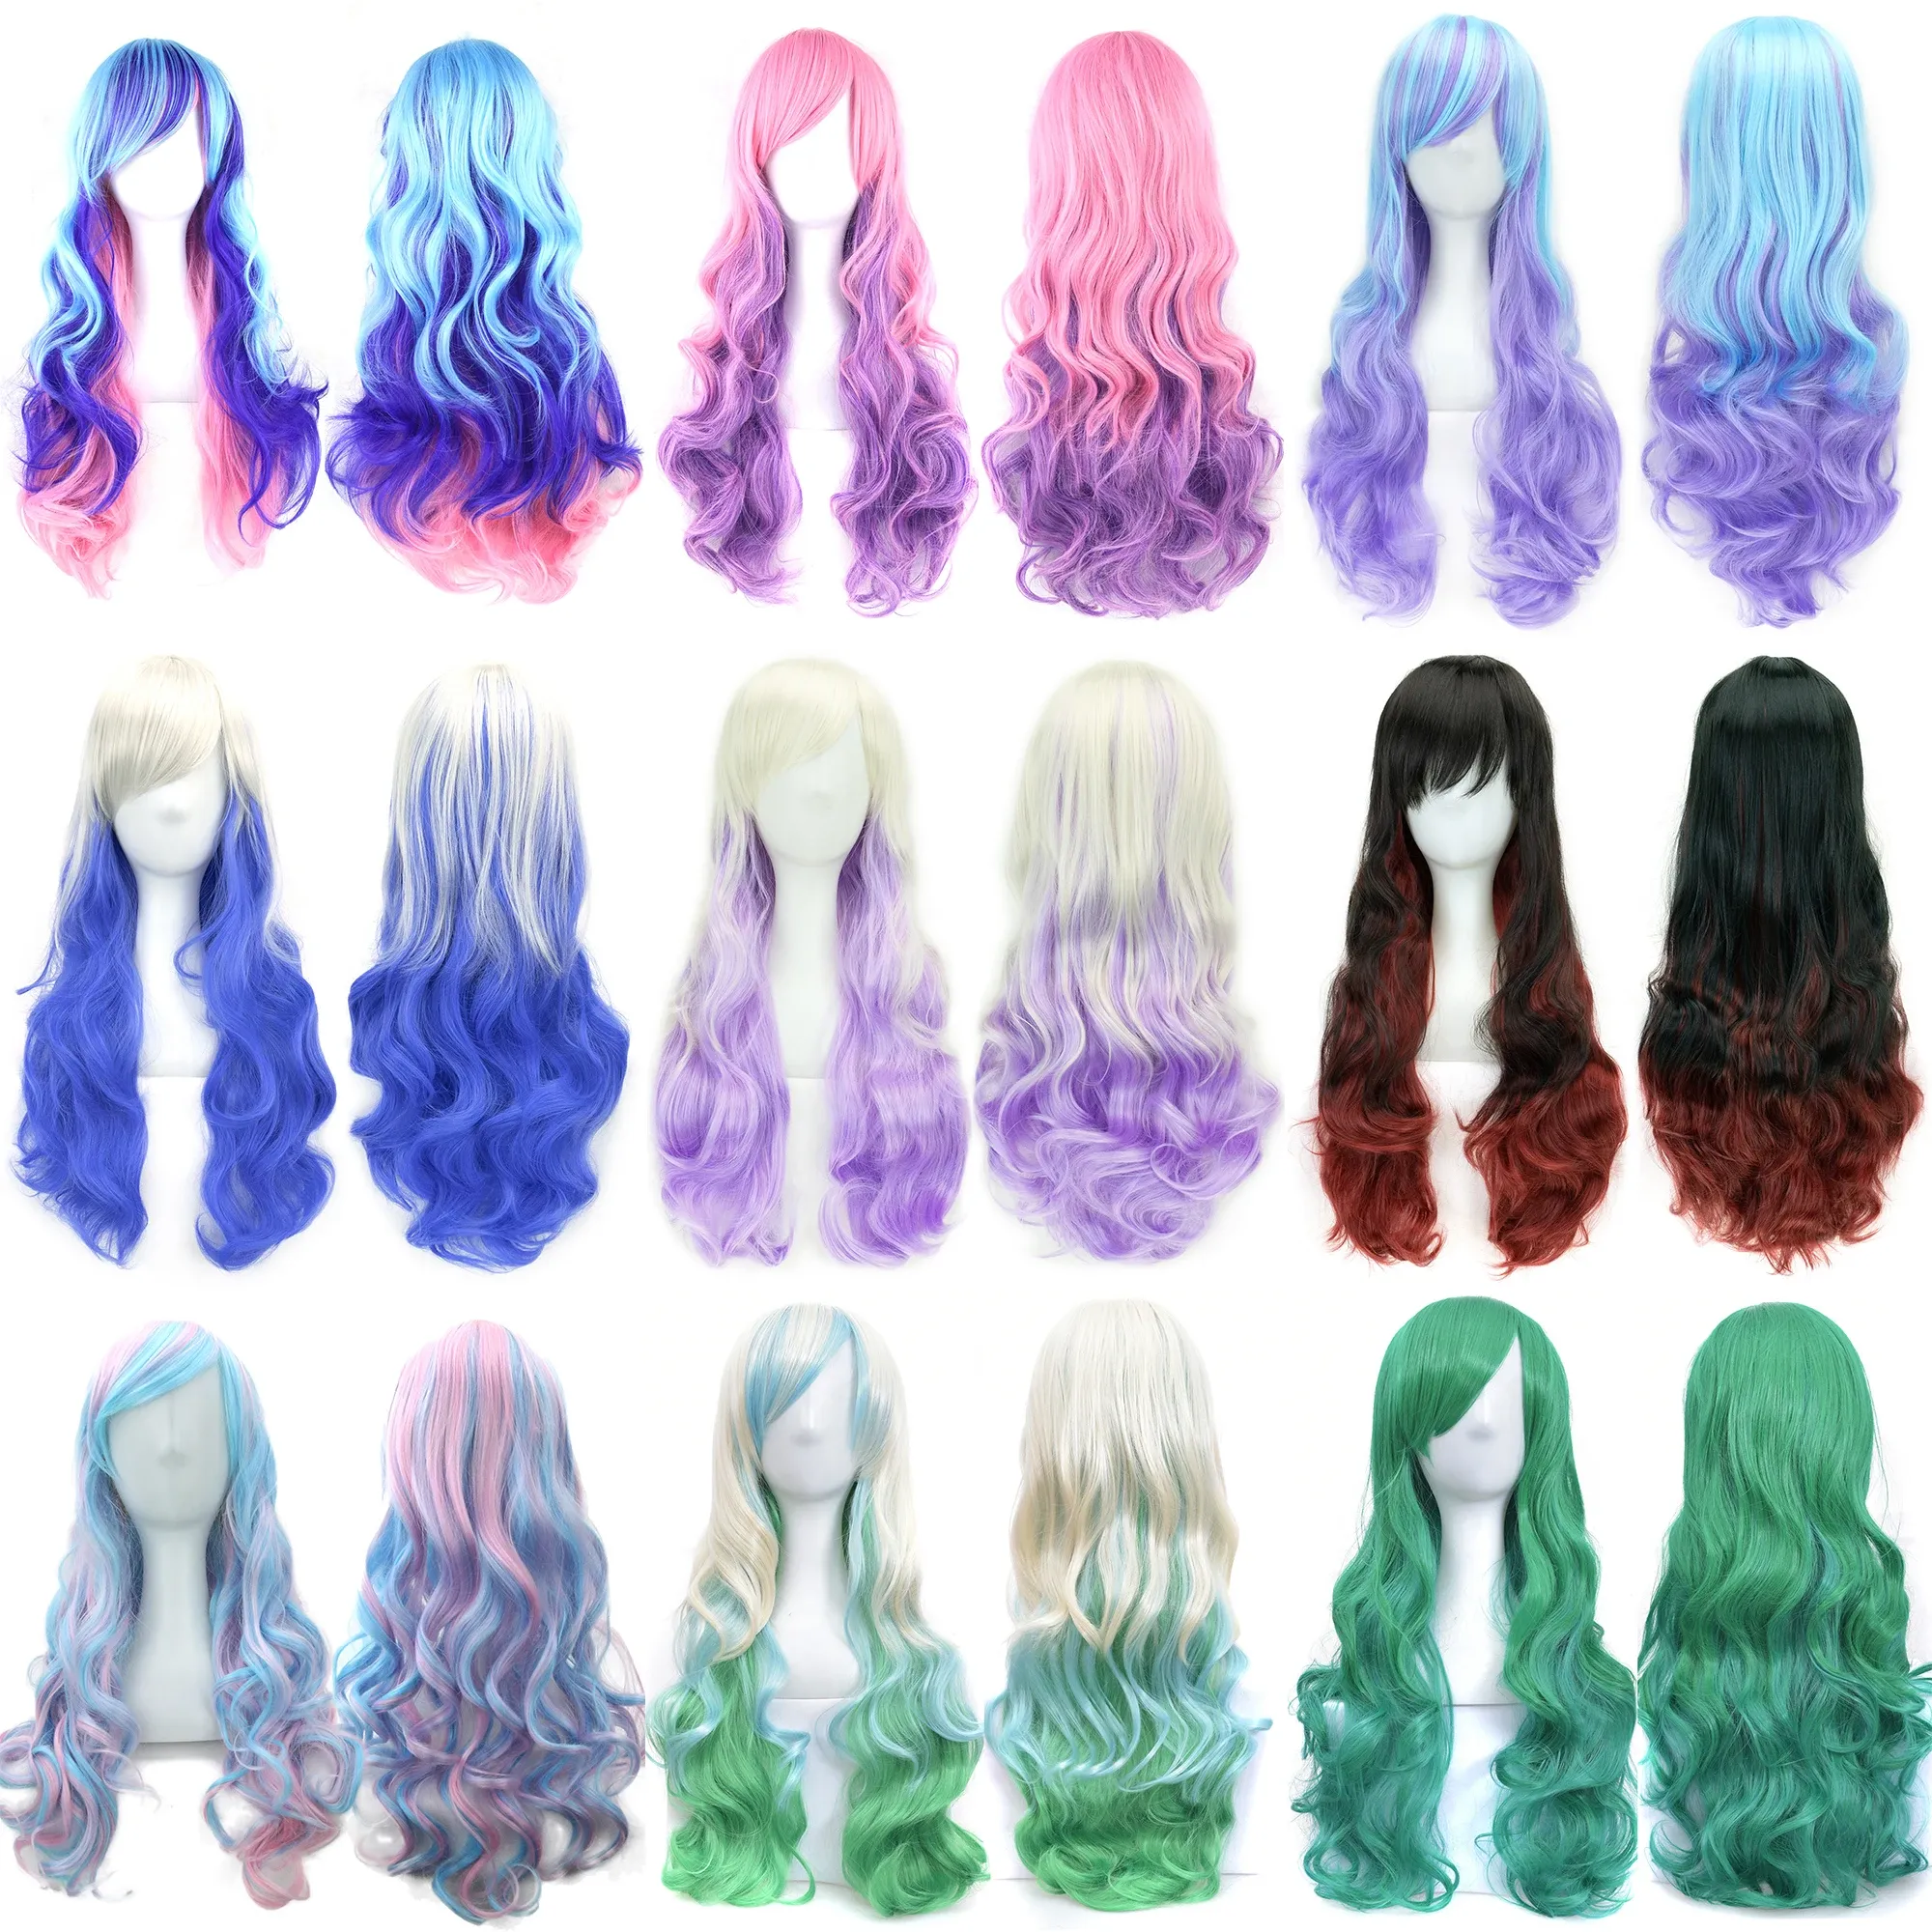 Peruki Soowee 17 Colours Favy Women Wid Wid Temperature Wysoka temperatura Syntetyczna włosa do włosów długie ombre fryzjerskie peruki